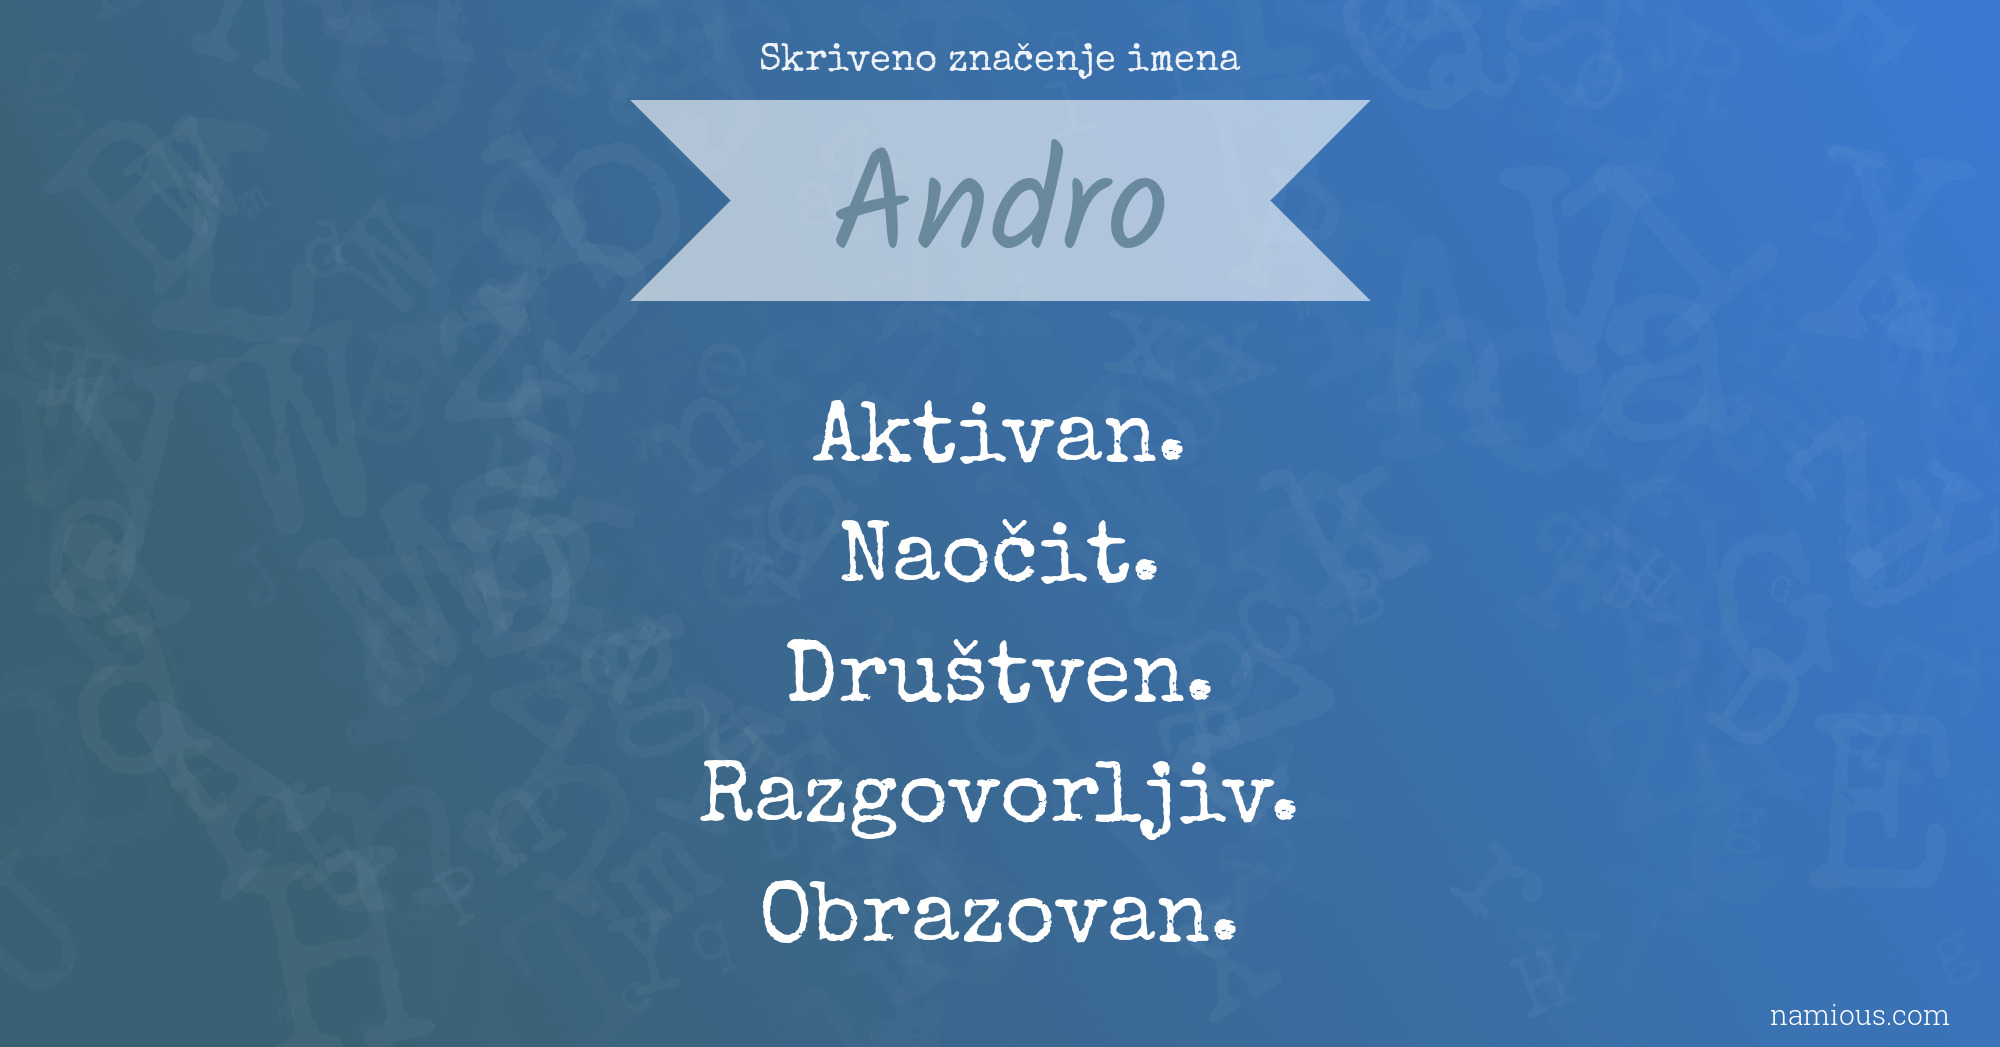 Skriveno značenje imena Andro